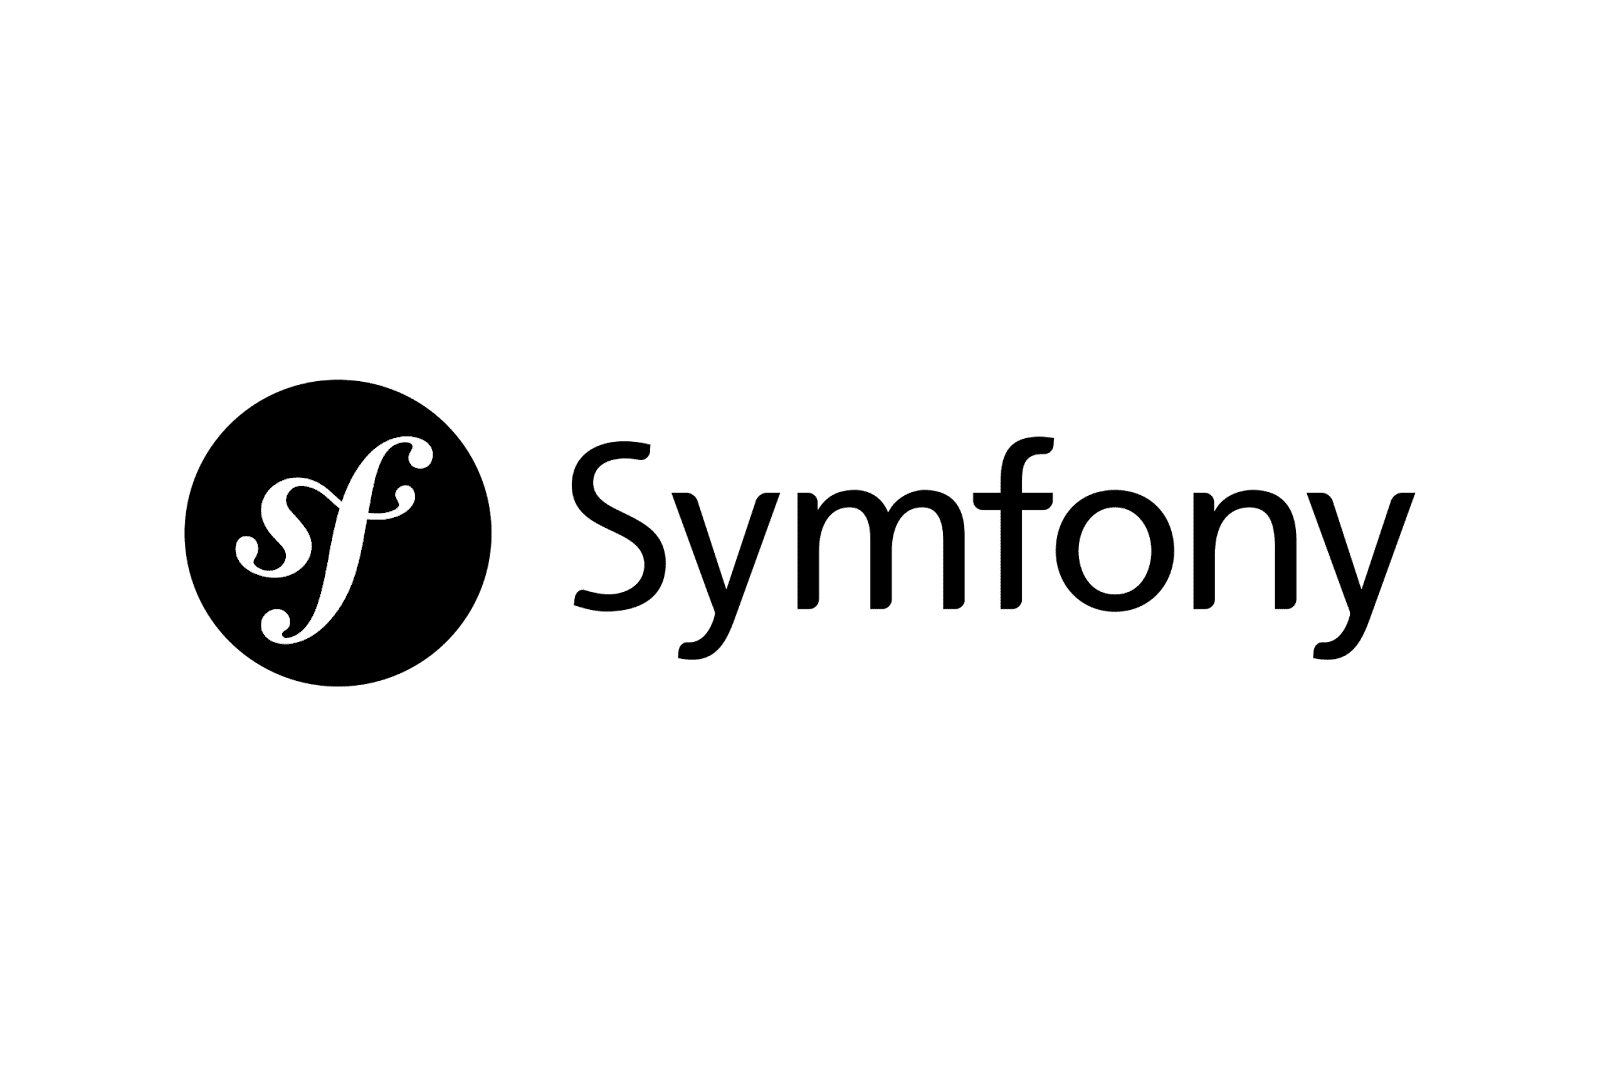 Het Symfony logo met het woord in het zwart en de initialen "sf" in het wit bovenop een zwarte cirkel.